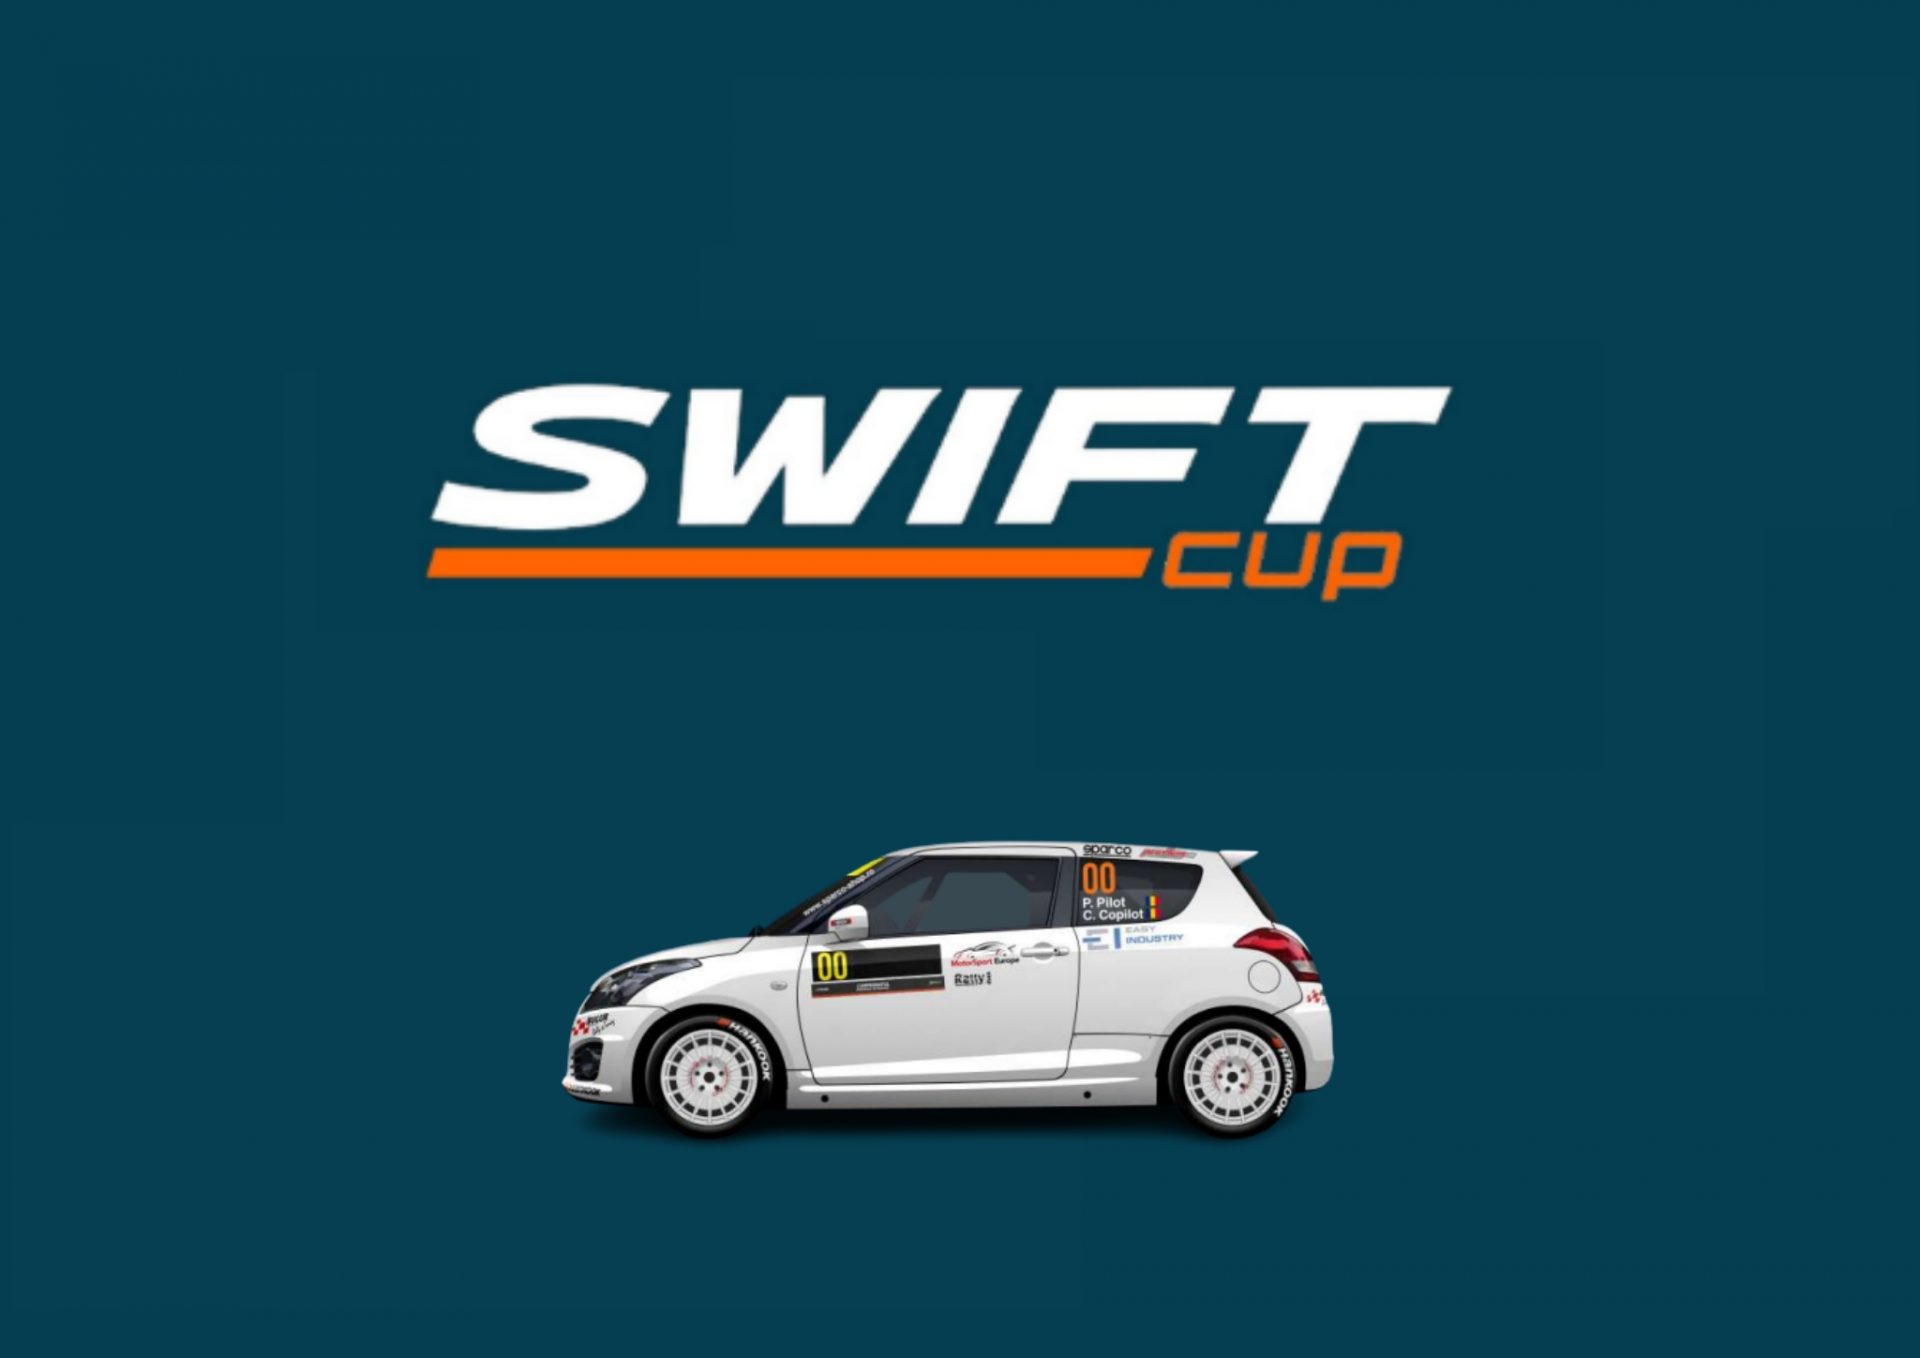 Sezon aniversar pentru Swift Cup în 2022